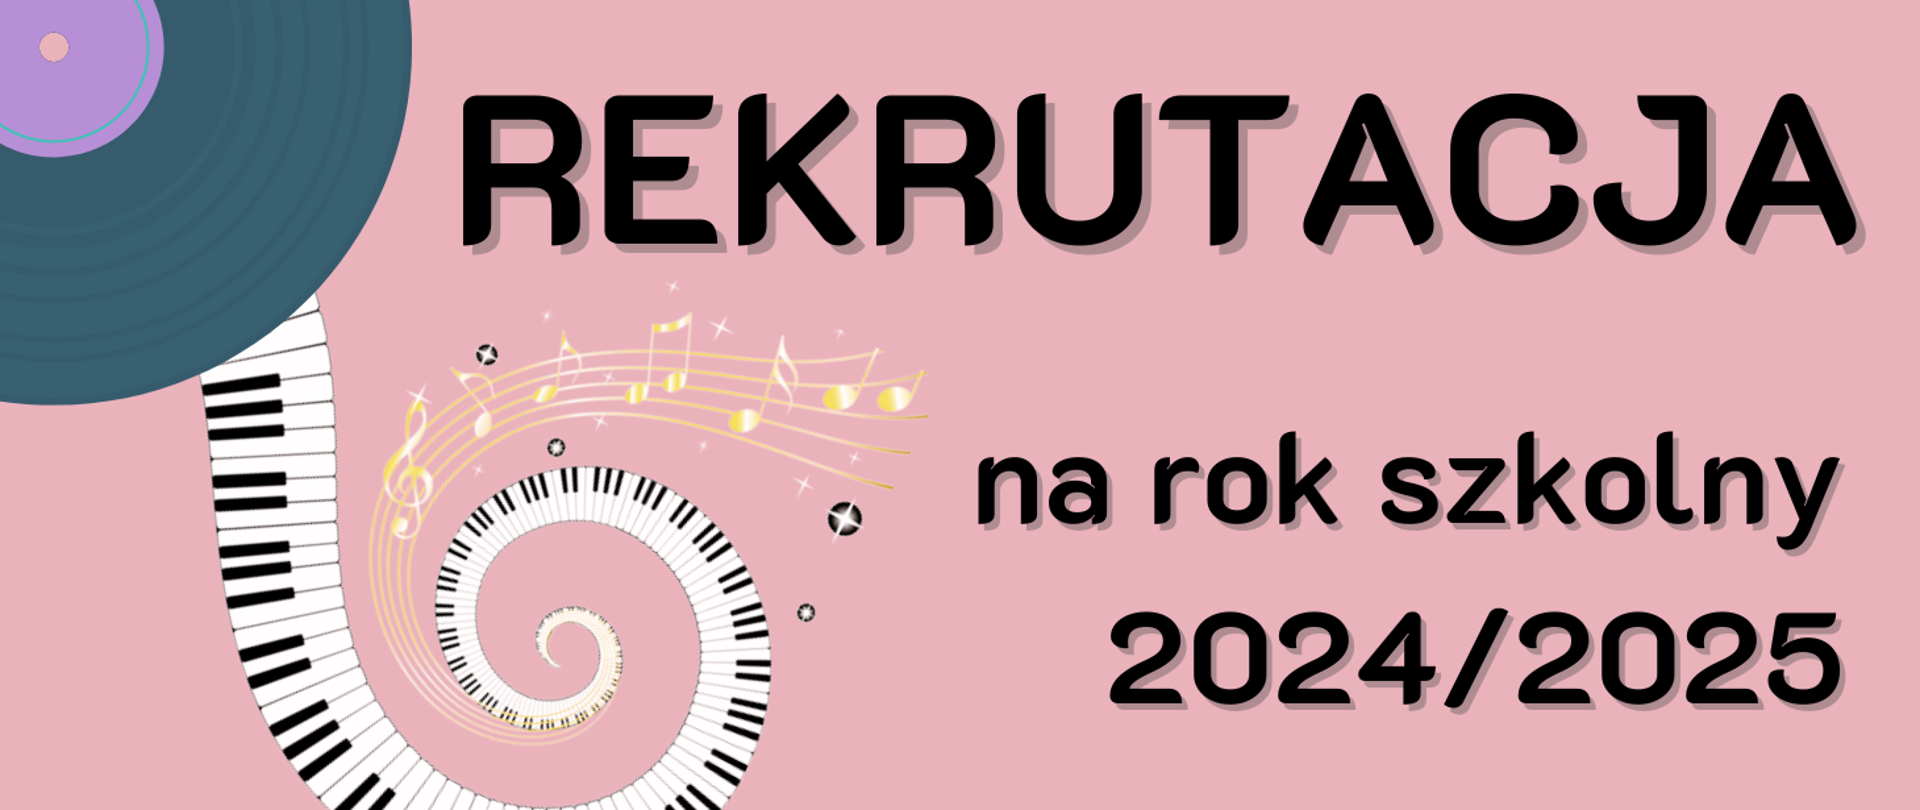 z lewej strony grafika płyty winylowej oraz klawiatury fortepianowej, w centralnej części napis: "Rekrutacja na rok szkolny 2024/25", całość na różowym tle